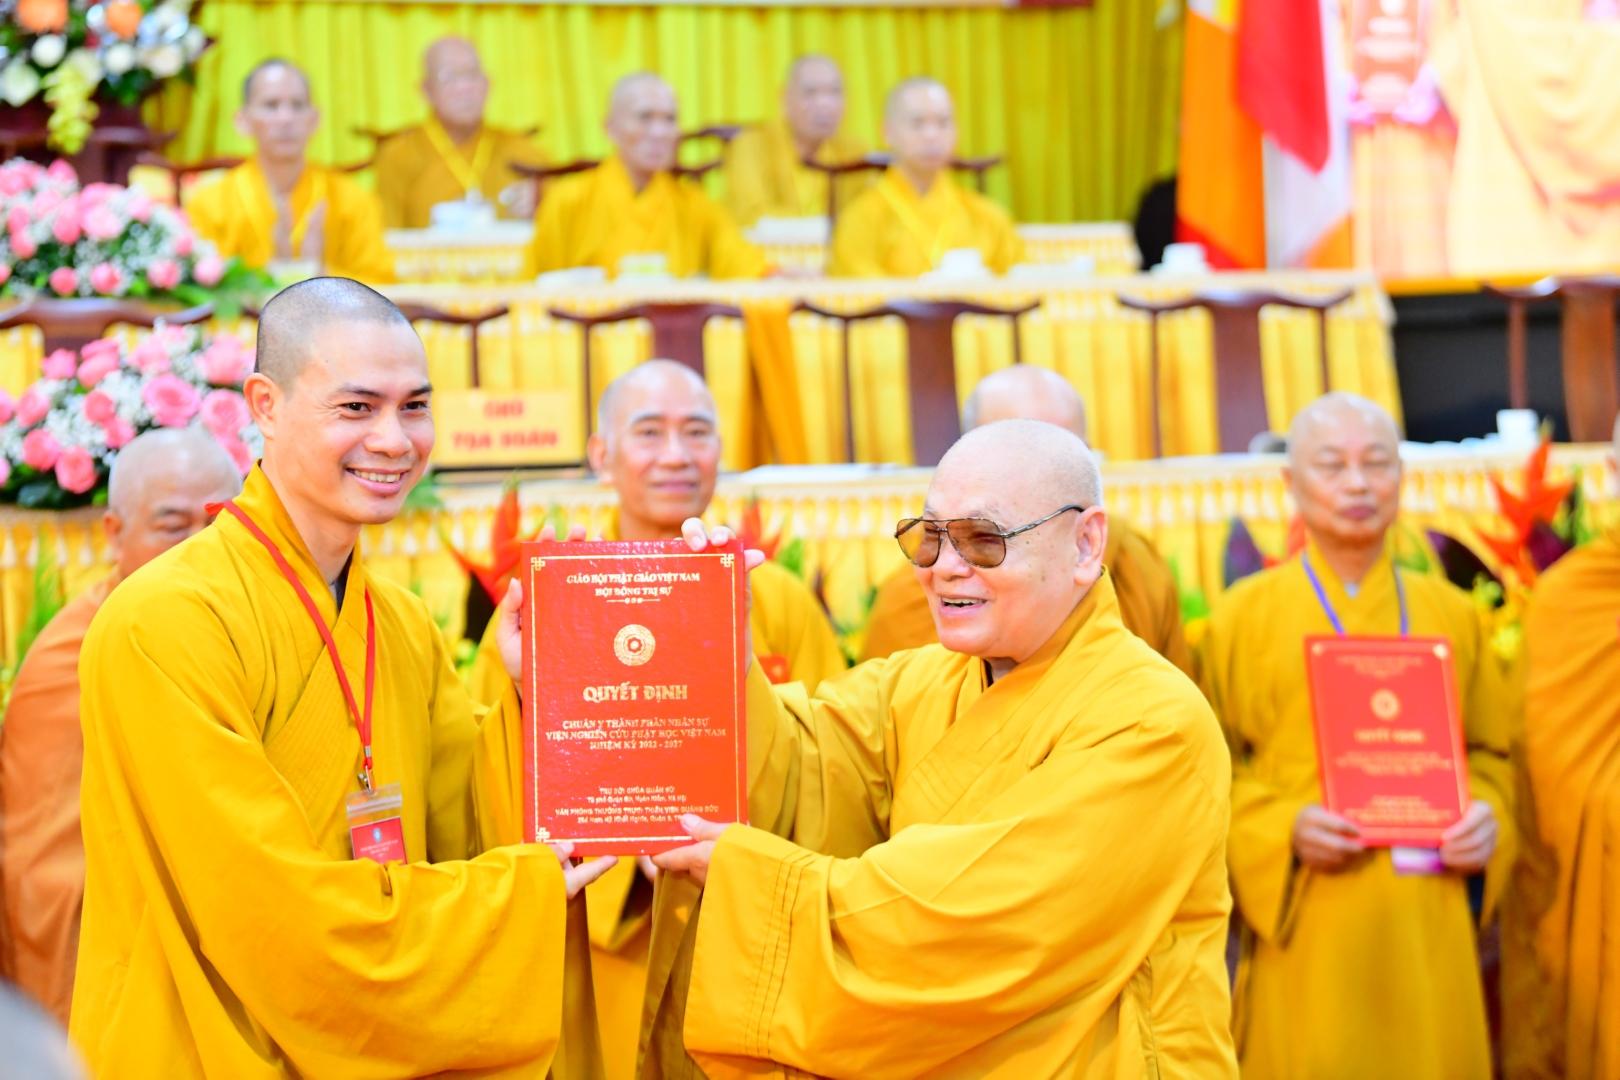 Viện Nghiên cứu Phật học Việt Nam ra mắt nhân sự nhiệm kỳ 2022 - 2027